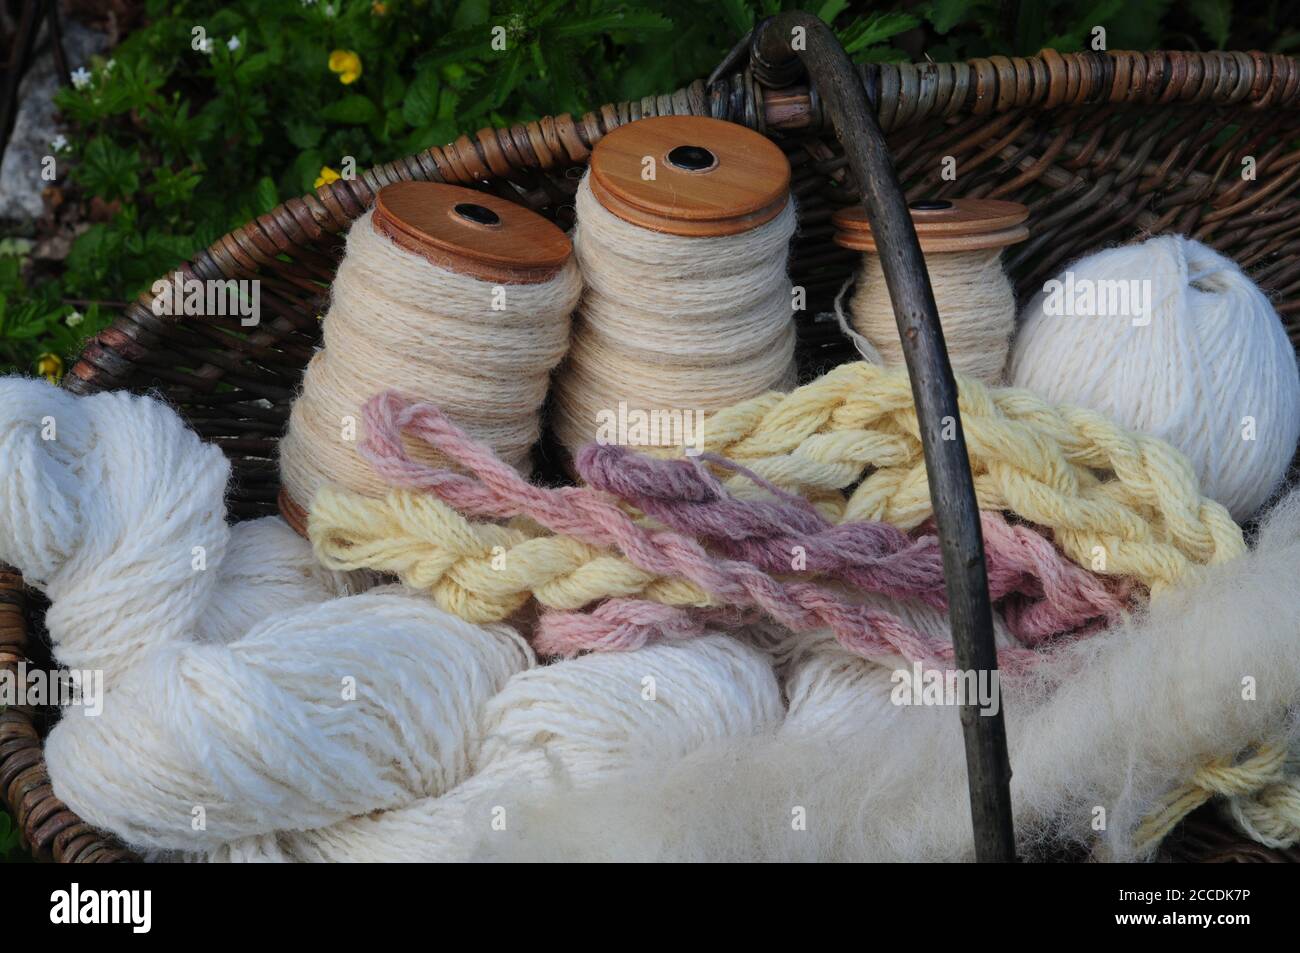 Panier de laine filée et naturellement teint, avec un rolag de polaire Pickwick cru prêt à tourner au premier plan. Banque D'Images